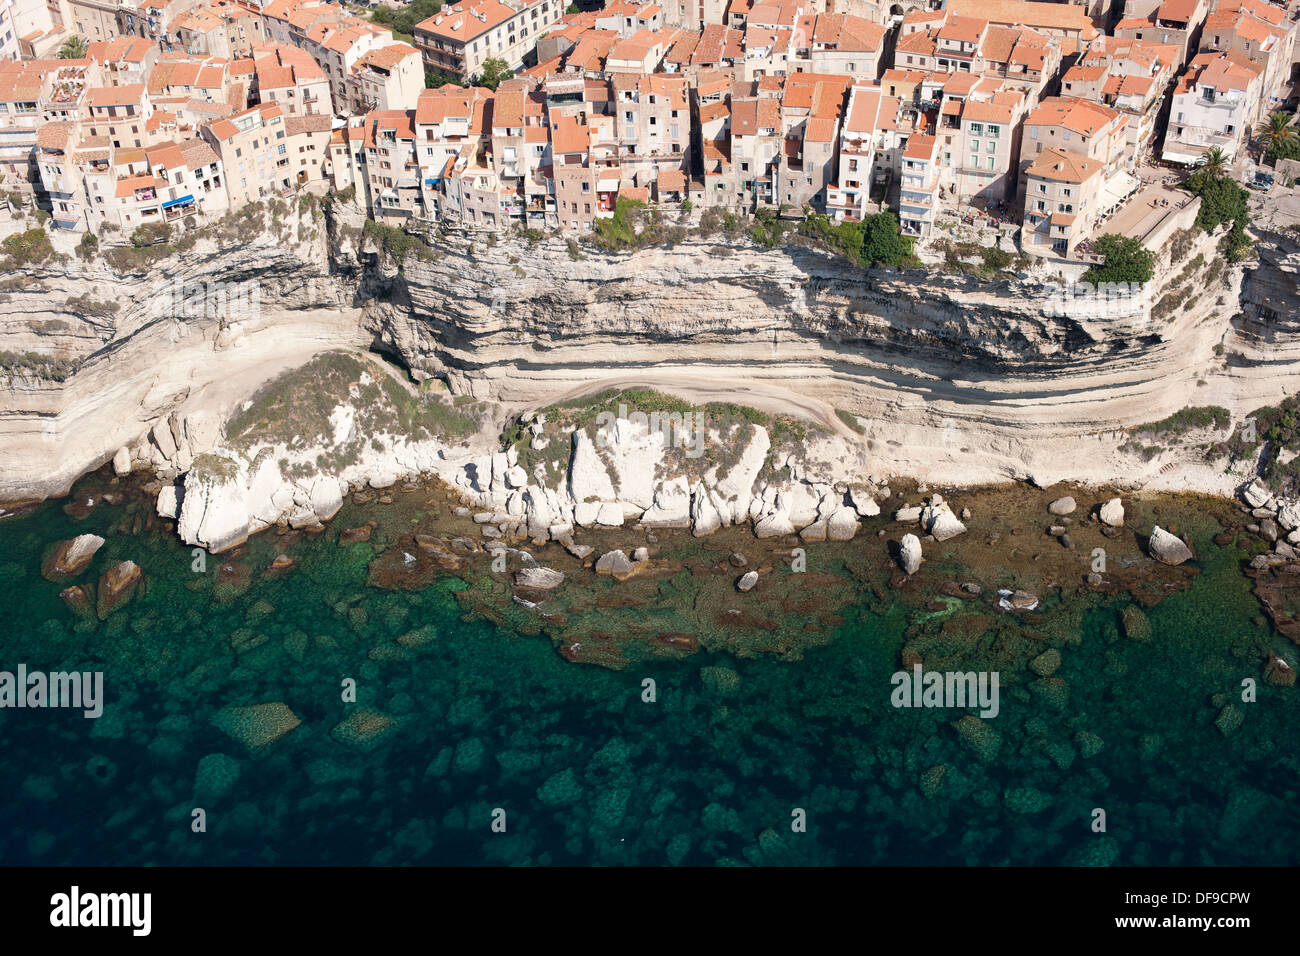 VUE AÉRIENNE.Maisons au sommet d'une falaise de calcaire au-dessus de la mer Méditerranée.Bonifacio, Corse, France. Banque D'Images